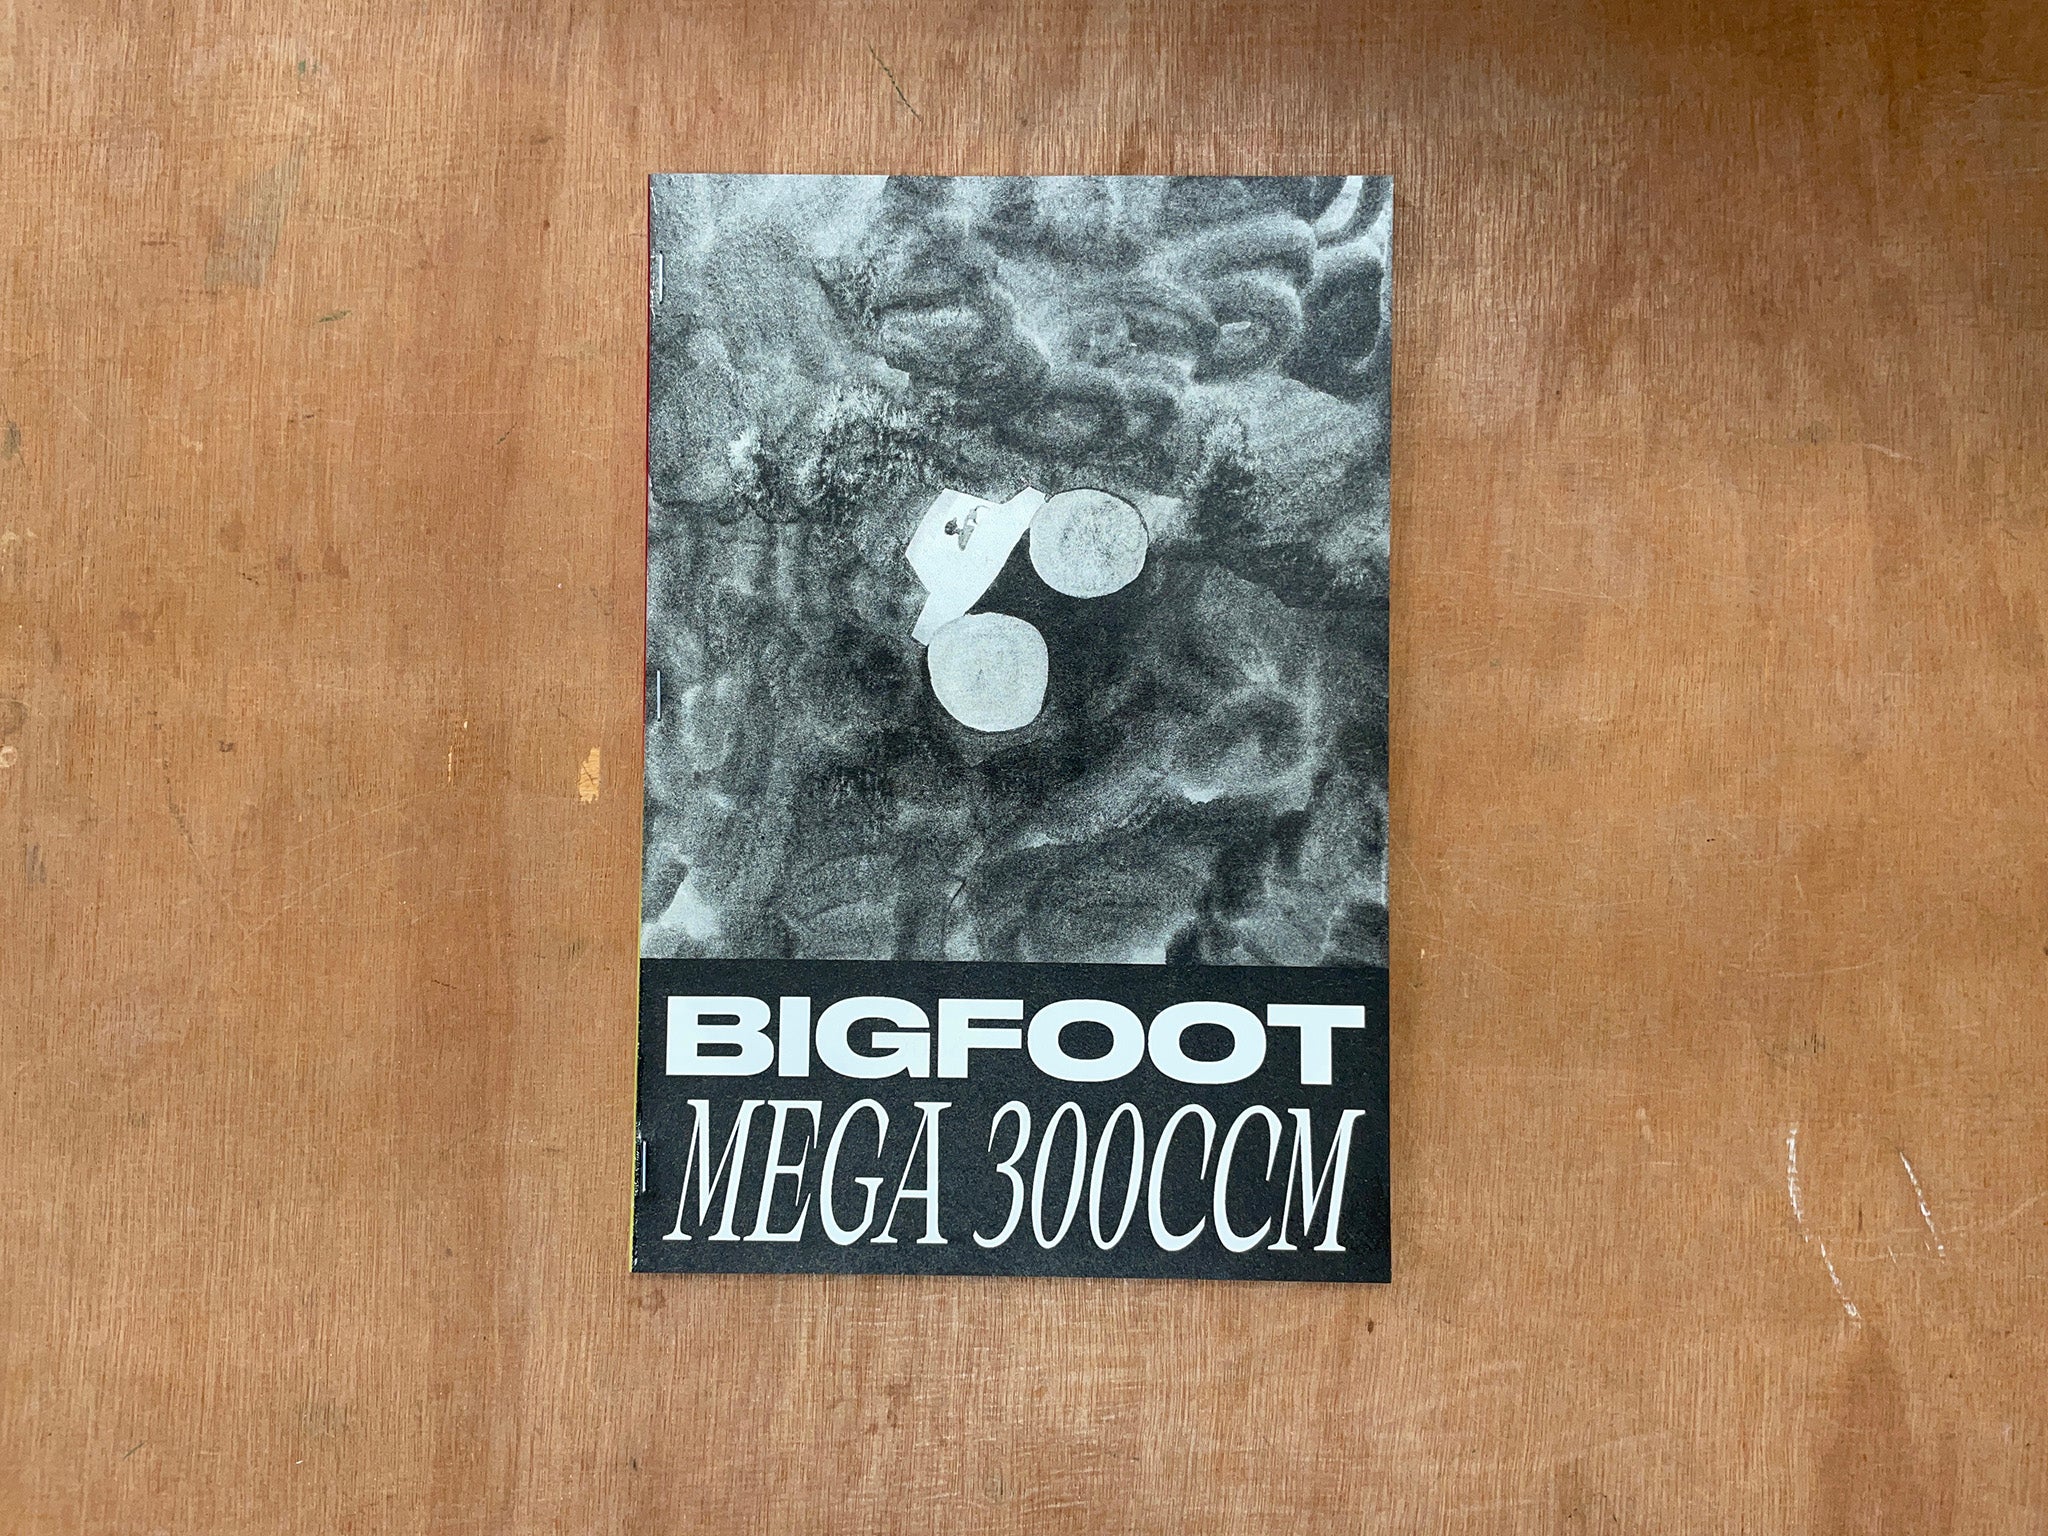 BIGFOOT MEGA 300CCM by Dario Forlin